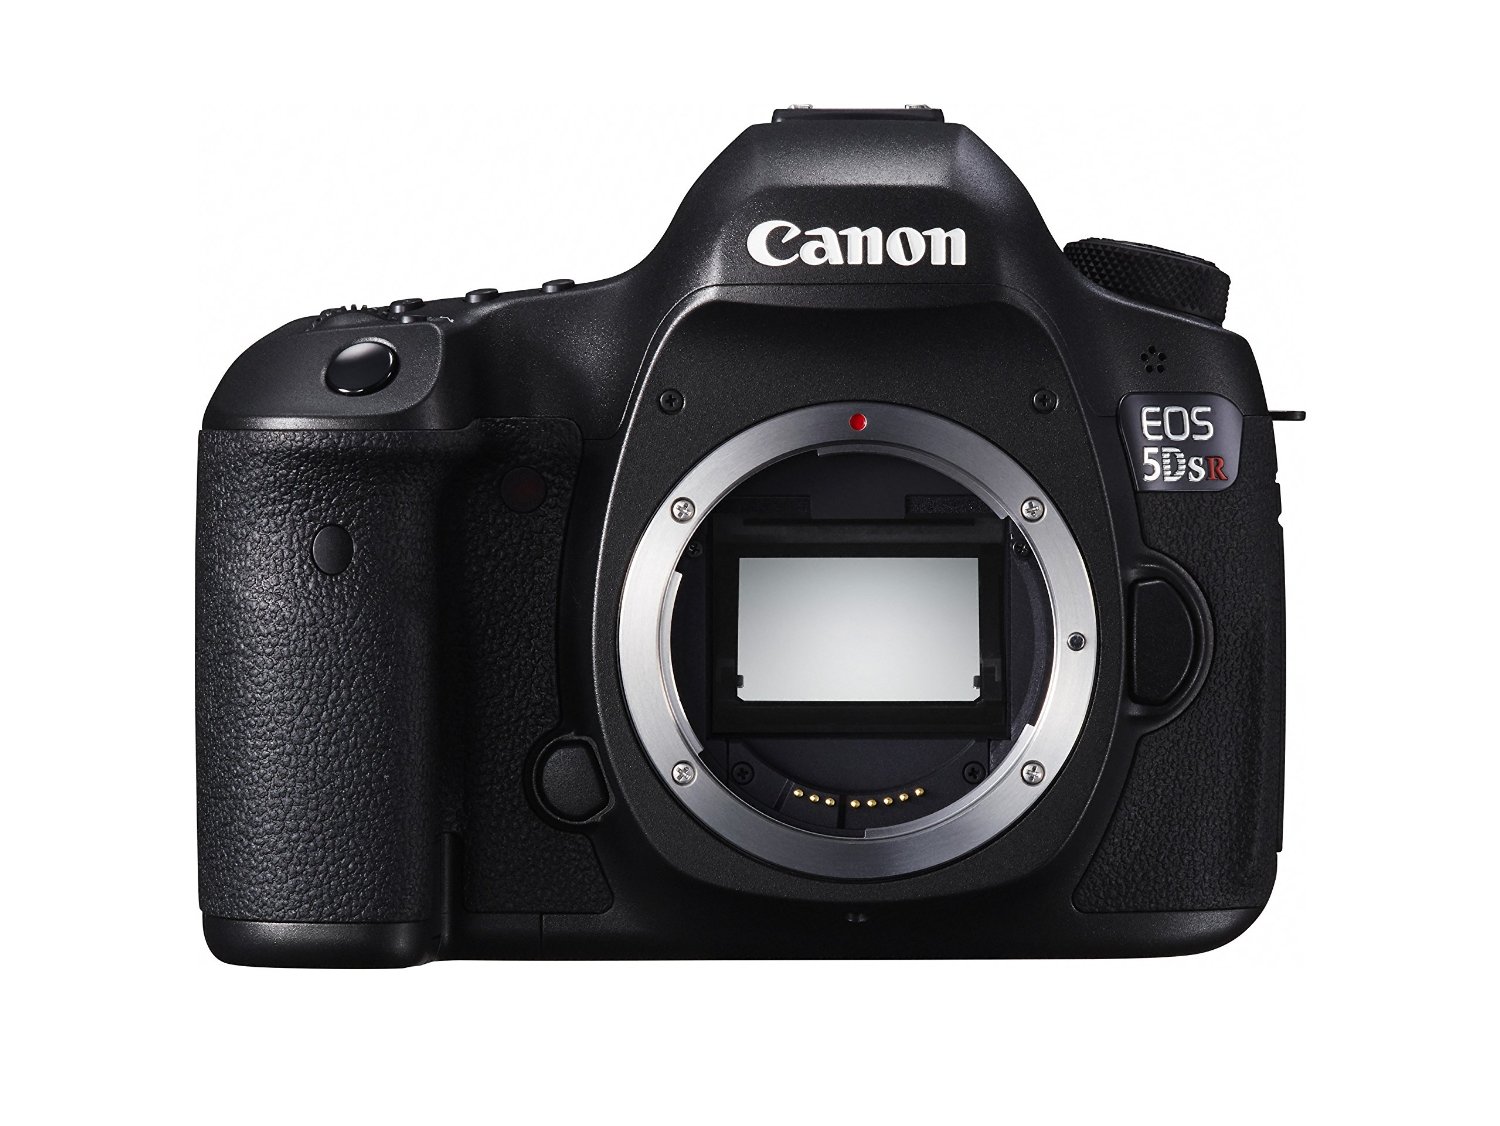 Canon 저역 통과 필터 효과 제거 기능이있는 EOS 5DS R 디지털 SLR (본체 만 해당)...